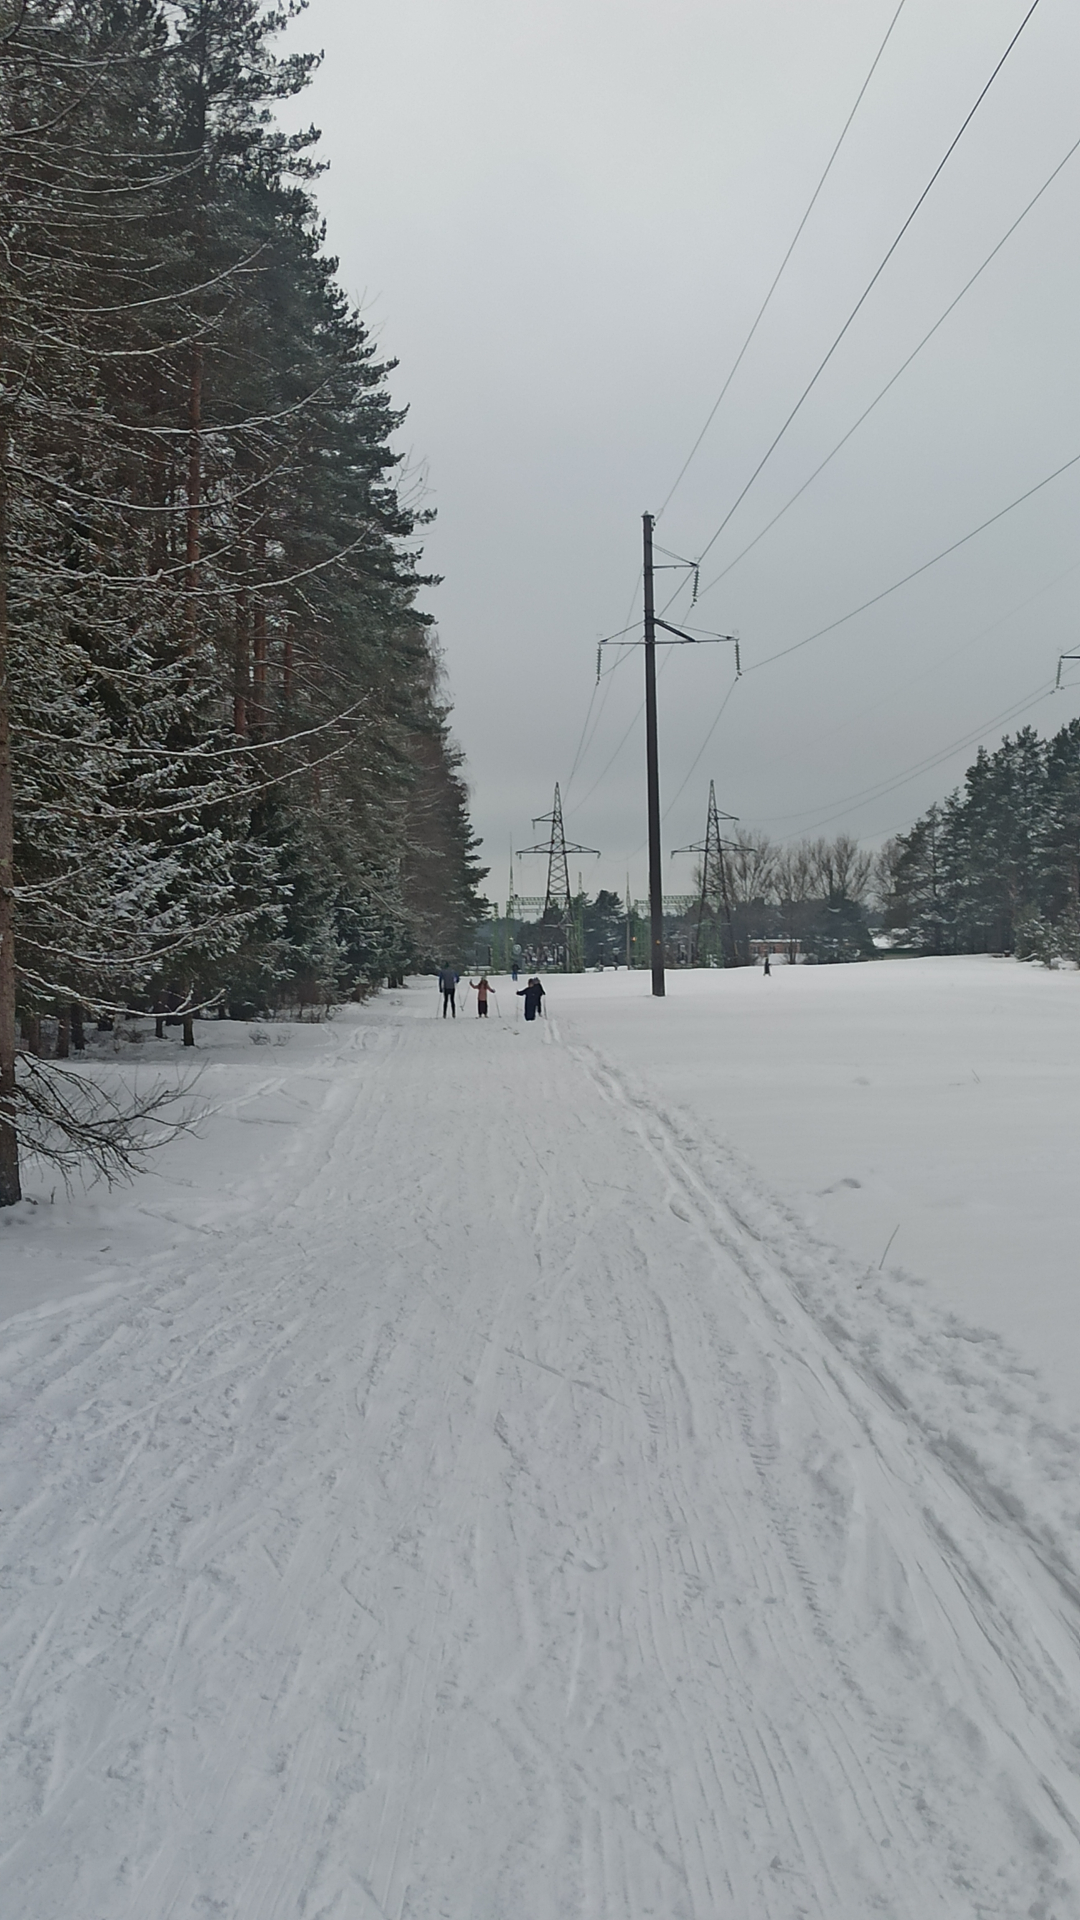  Mums raksta: Jēkabpils Mežaparkā mani ar dēlu rupji dzina nost no slēpotāju trases, neļaujot bērnu vizināt ragaviņās